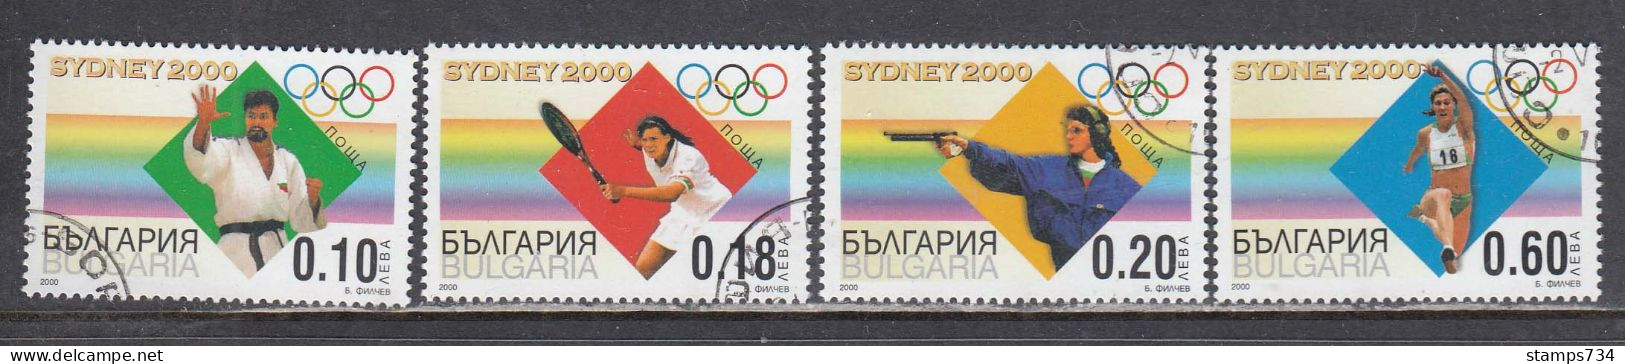 Bulgaria 2000 - Summer Olympic Games, Sydney, Mi-Nr. 4455/58, Used - Oblitérés